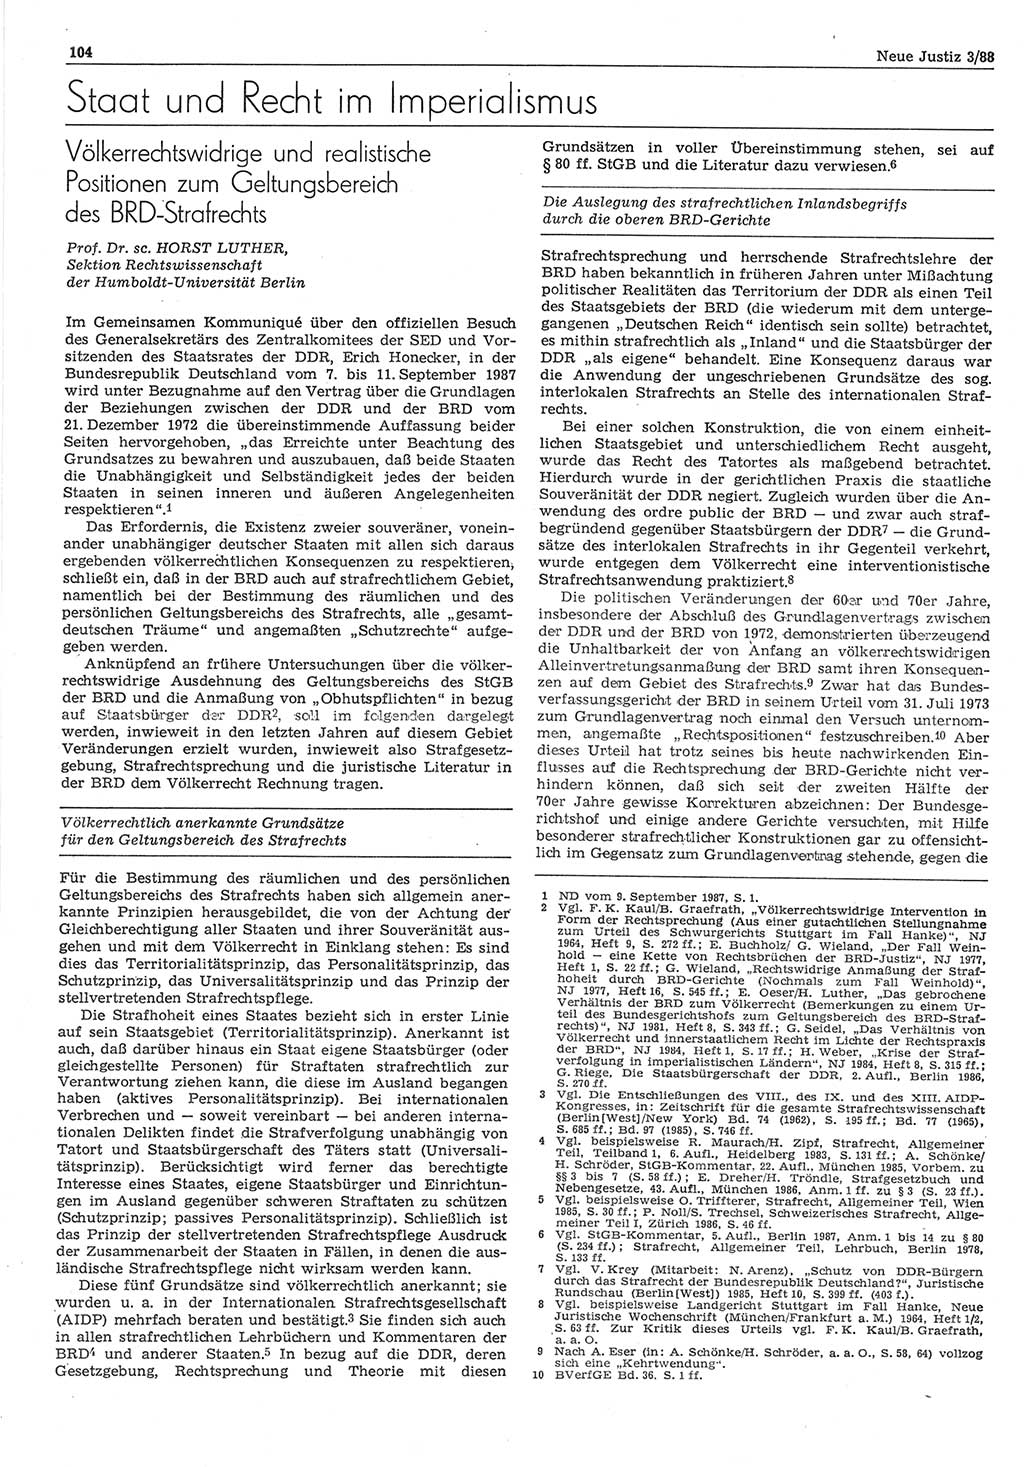 Neue Justiz (NJ), Zeitschrift für sozialistisches Recht und Gesetzlichkeit [Deutsche Demokratische Republik (DDR)], 42. Jahrgang 1988, Seite 104 (NJ DDR 1988, S. 104)